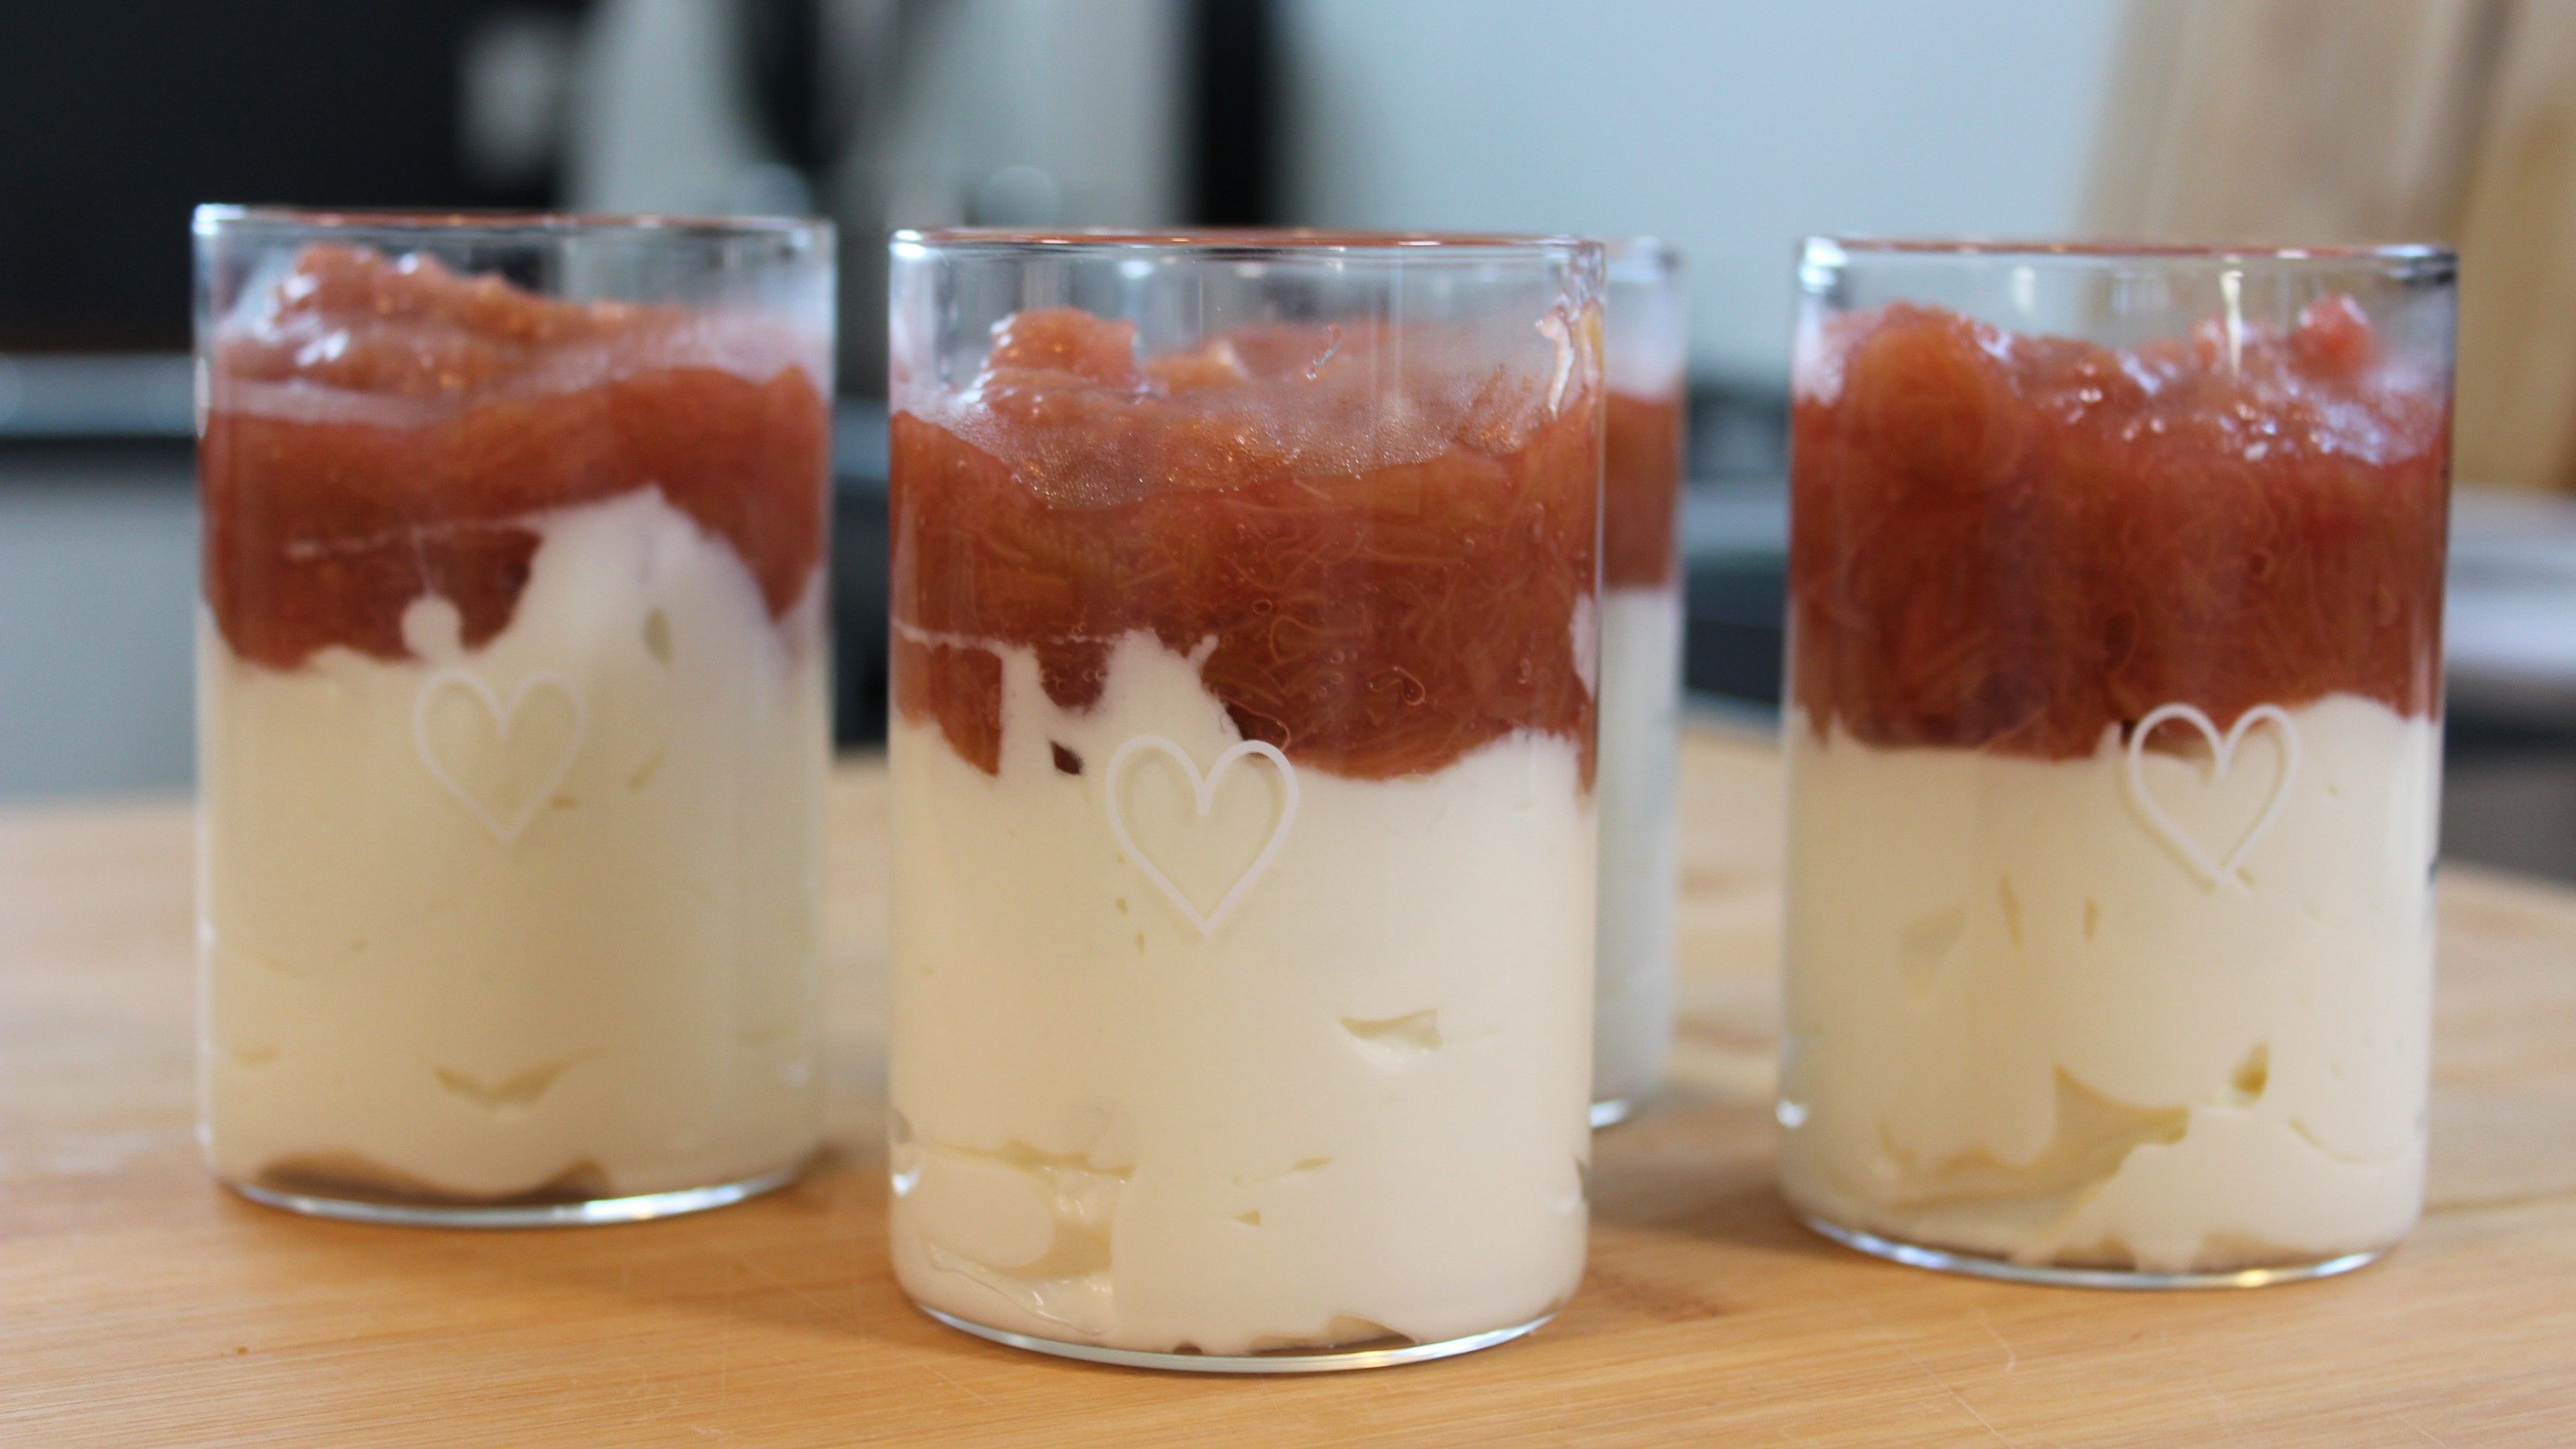 Rhabarber-Dessert mit Quark: Leckeres Schichtdessert im Glas